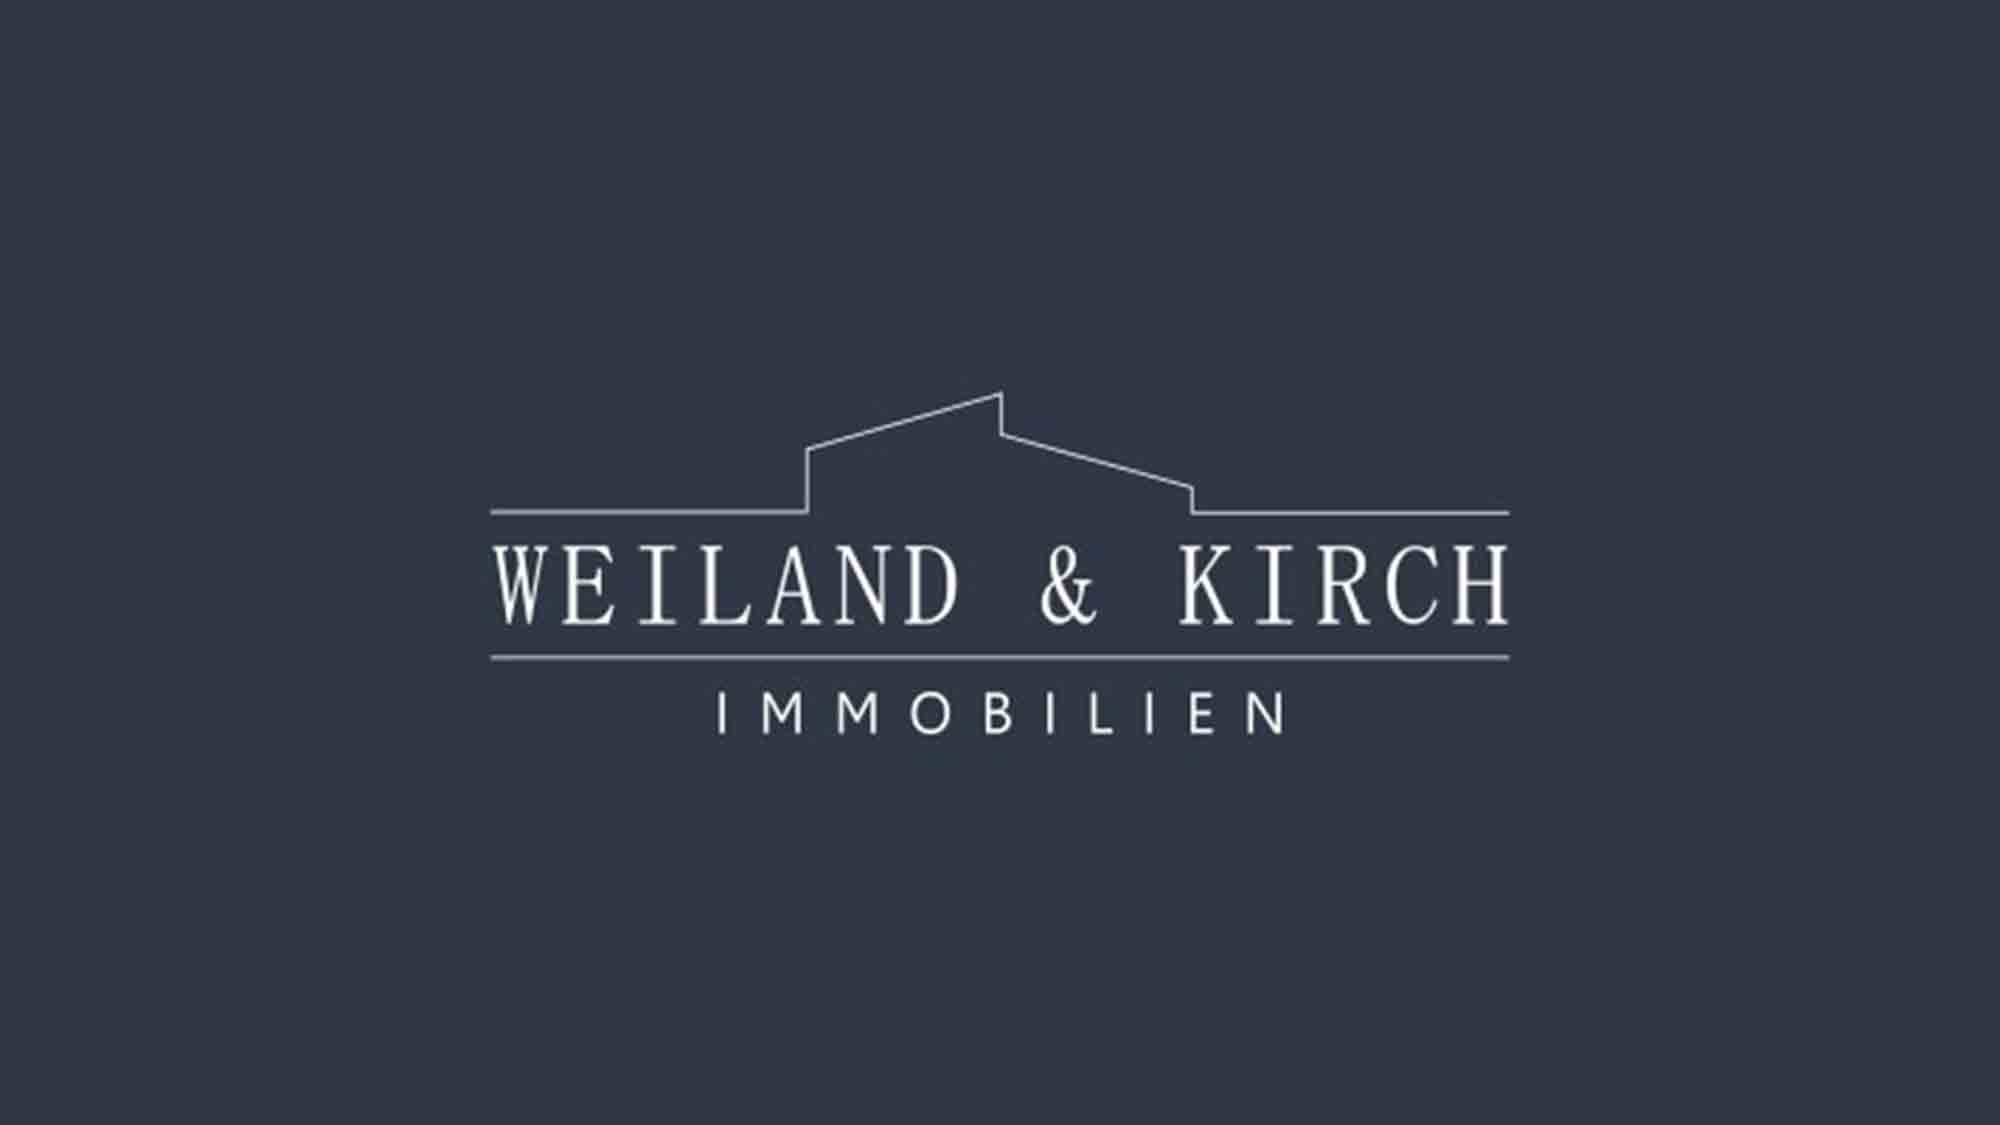 Weiland & Kirch Immobilien, erfolgreiches Geschäftsjahr, Sponsoring SV Elversberg und Ausbau von Kooperationen